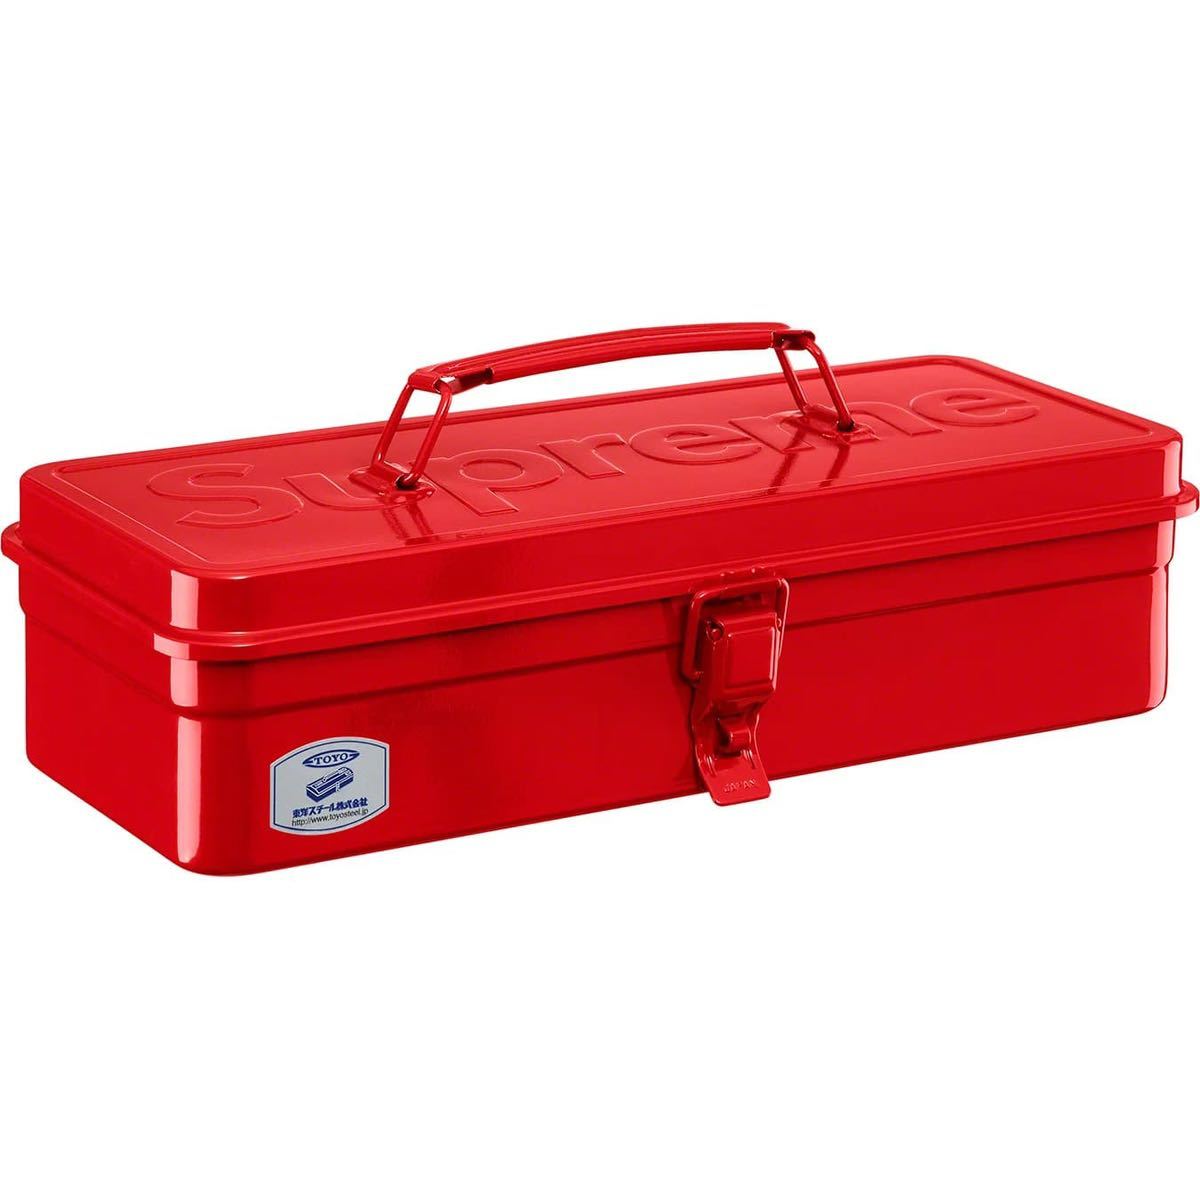 送料無料 赤 Supreme TOYO Steel T-320 Toolbox Red シュプリーム 東洋スチール ツールボックス 工具箱 22FW  box logo ボックスロゴ 新品